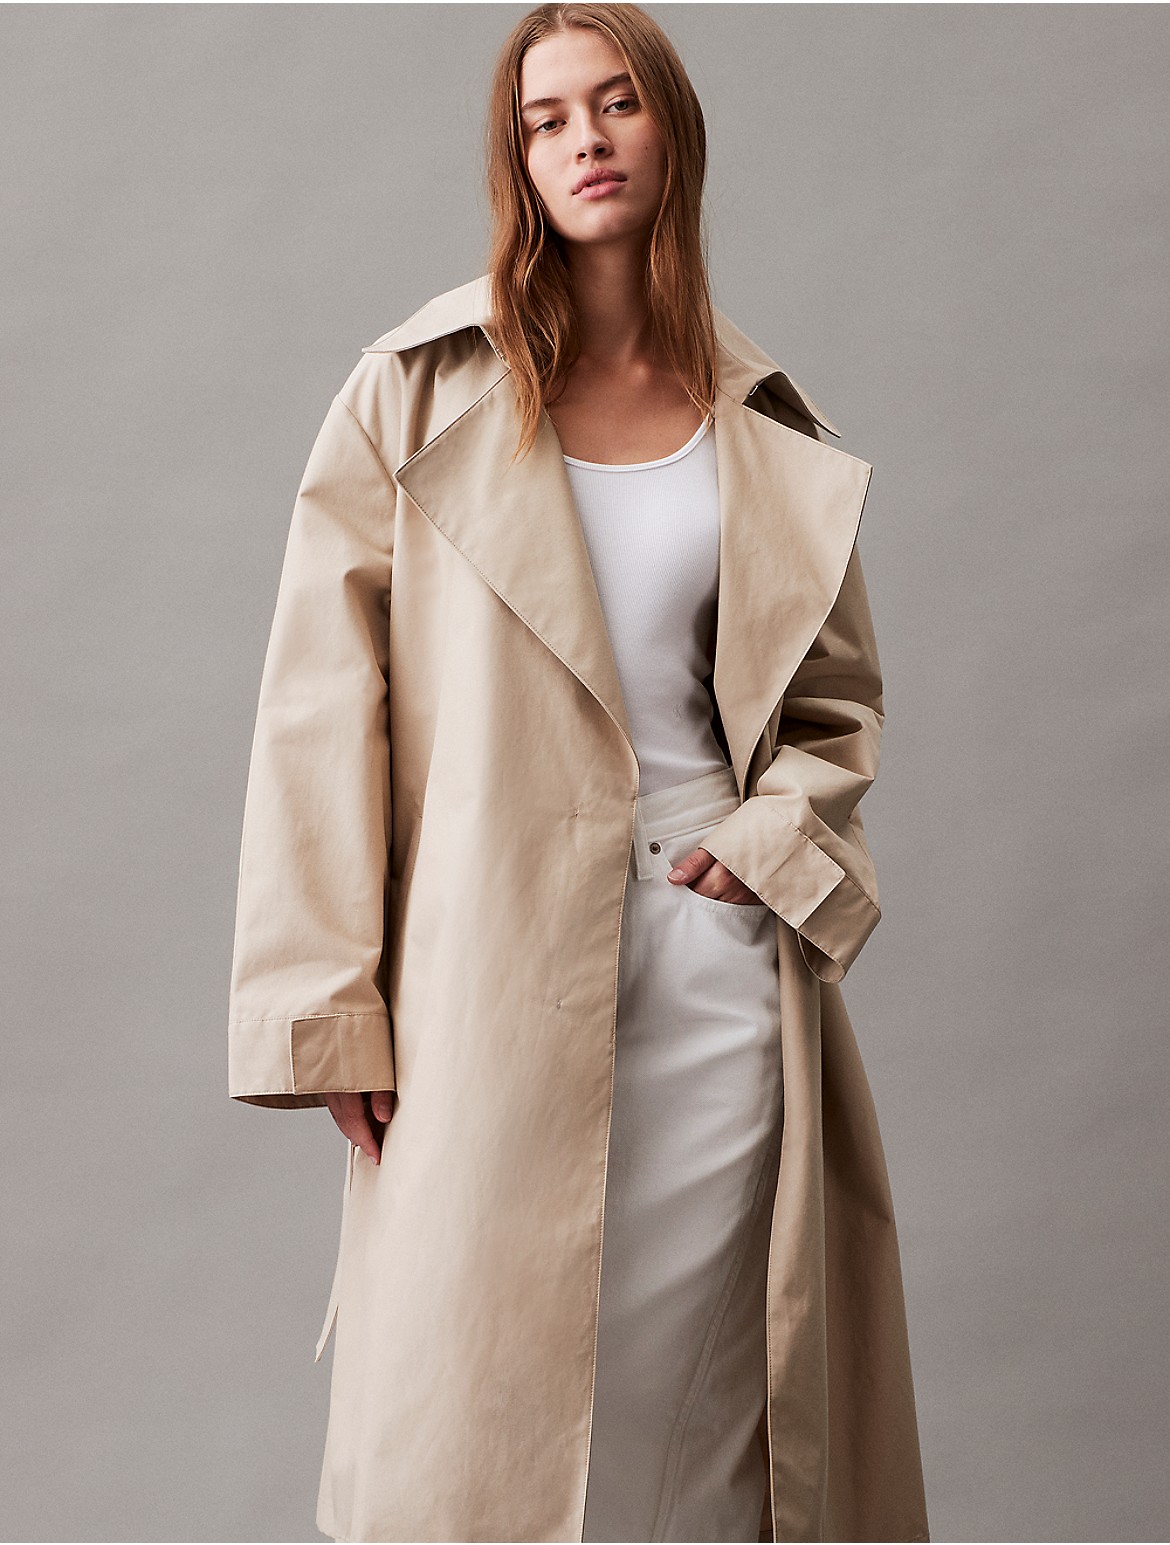 Calvin Klein Women's Essential Trench Coat - Neutral - XS